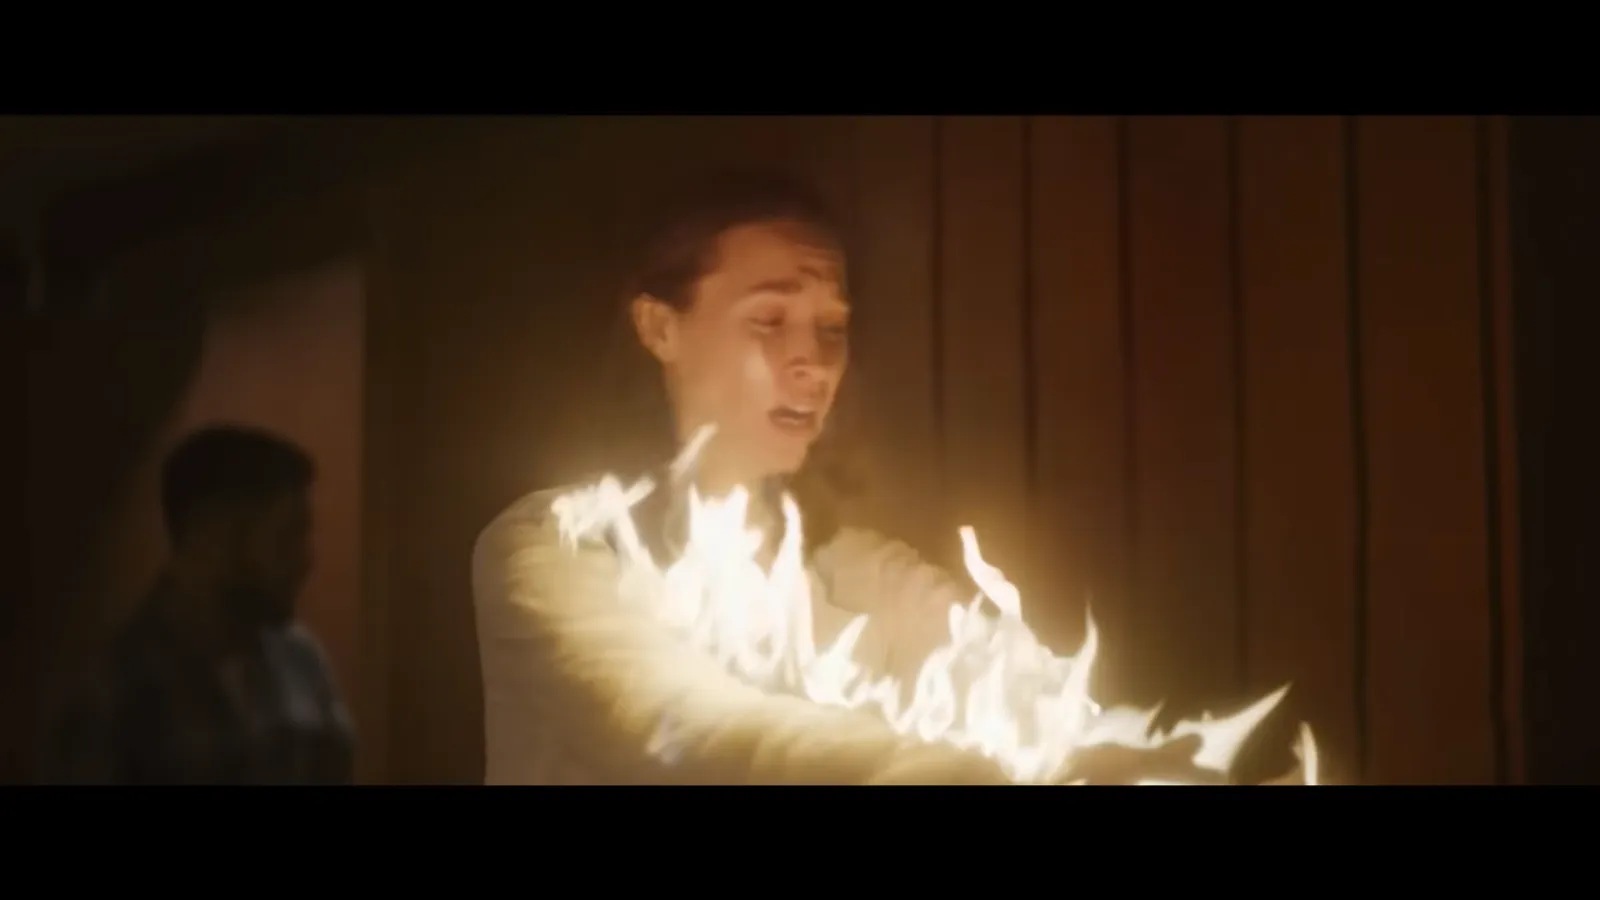 Film Horor Pertama Zac Efron, Simak 7 Fakta Menarik 'Firestarter'